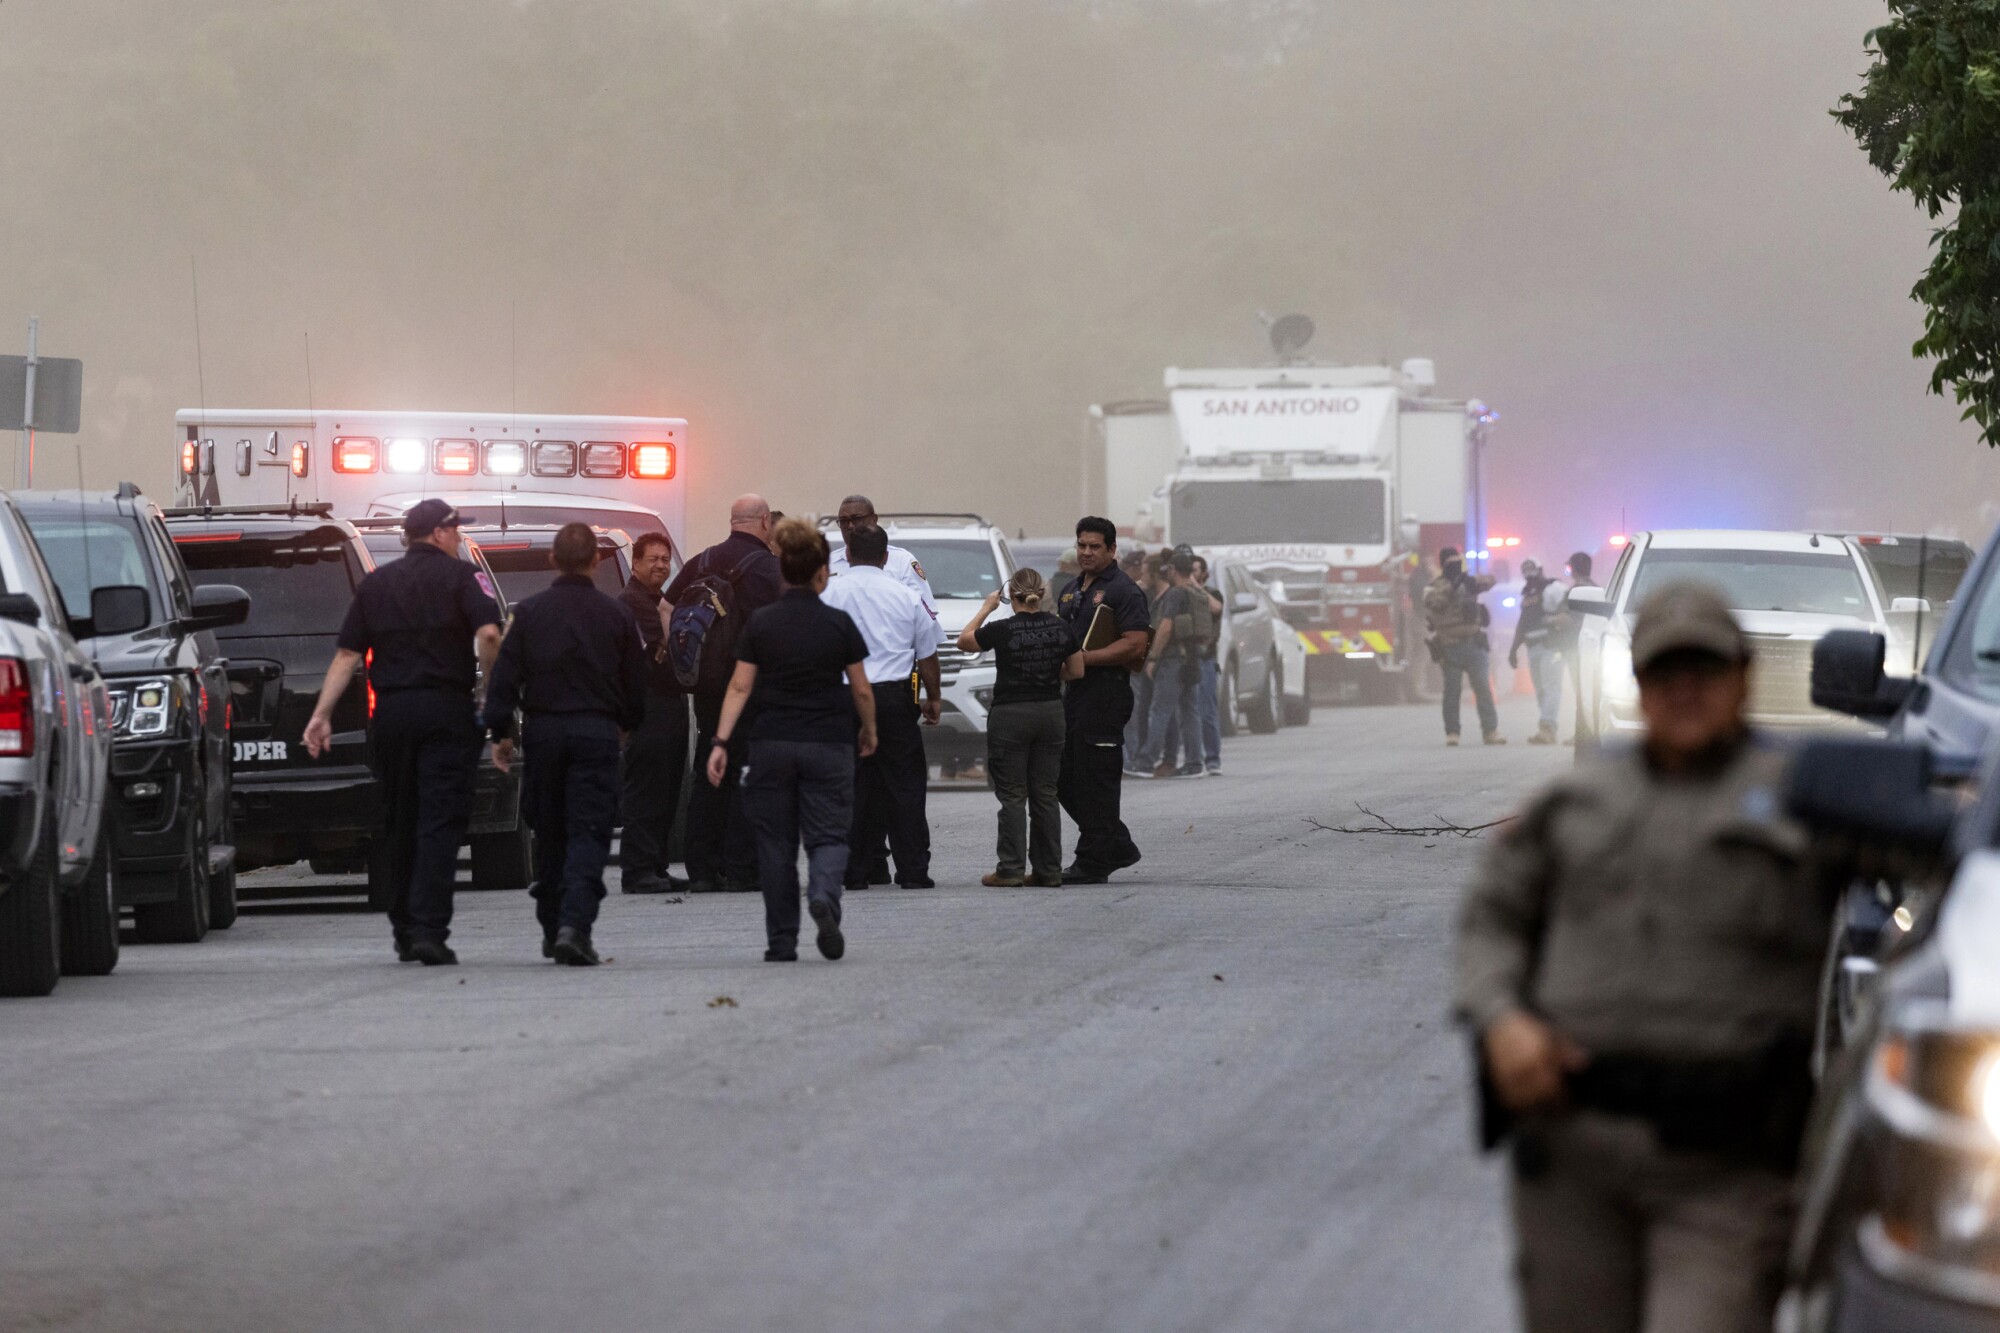 Polizeipersonal wird in der Nähe von langen Reihen von Einsatzfahrzeugen vor einem bewölkten Hintergrund gesehen